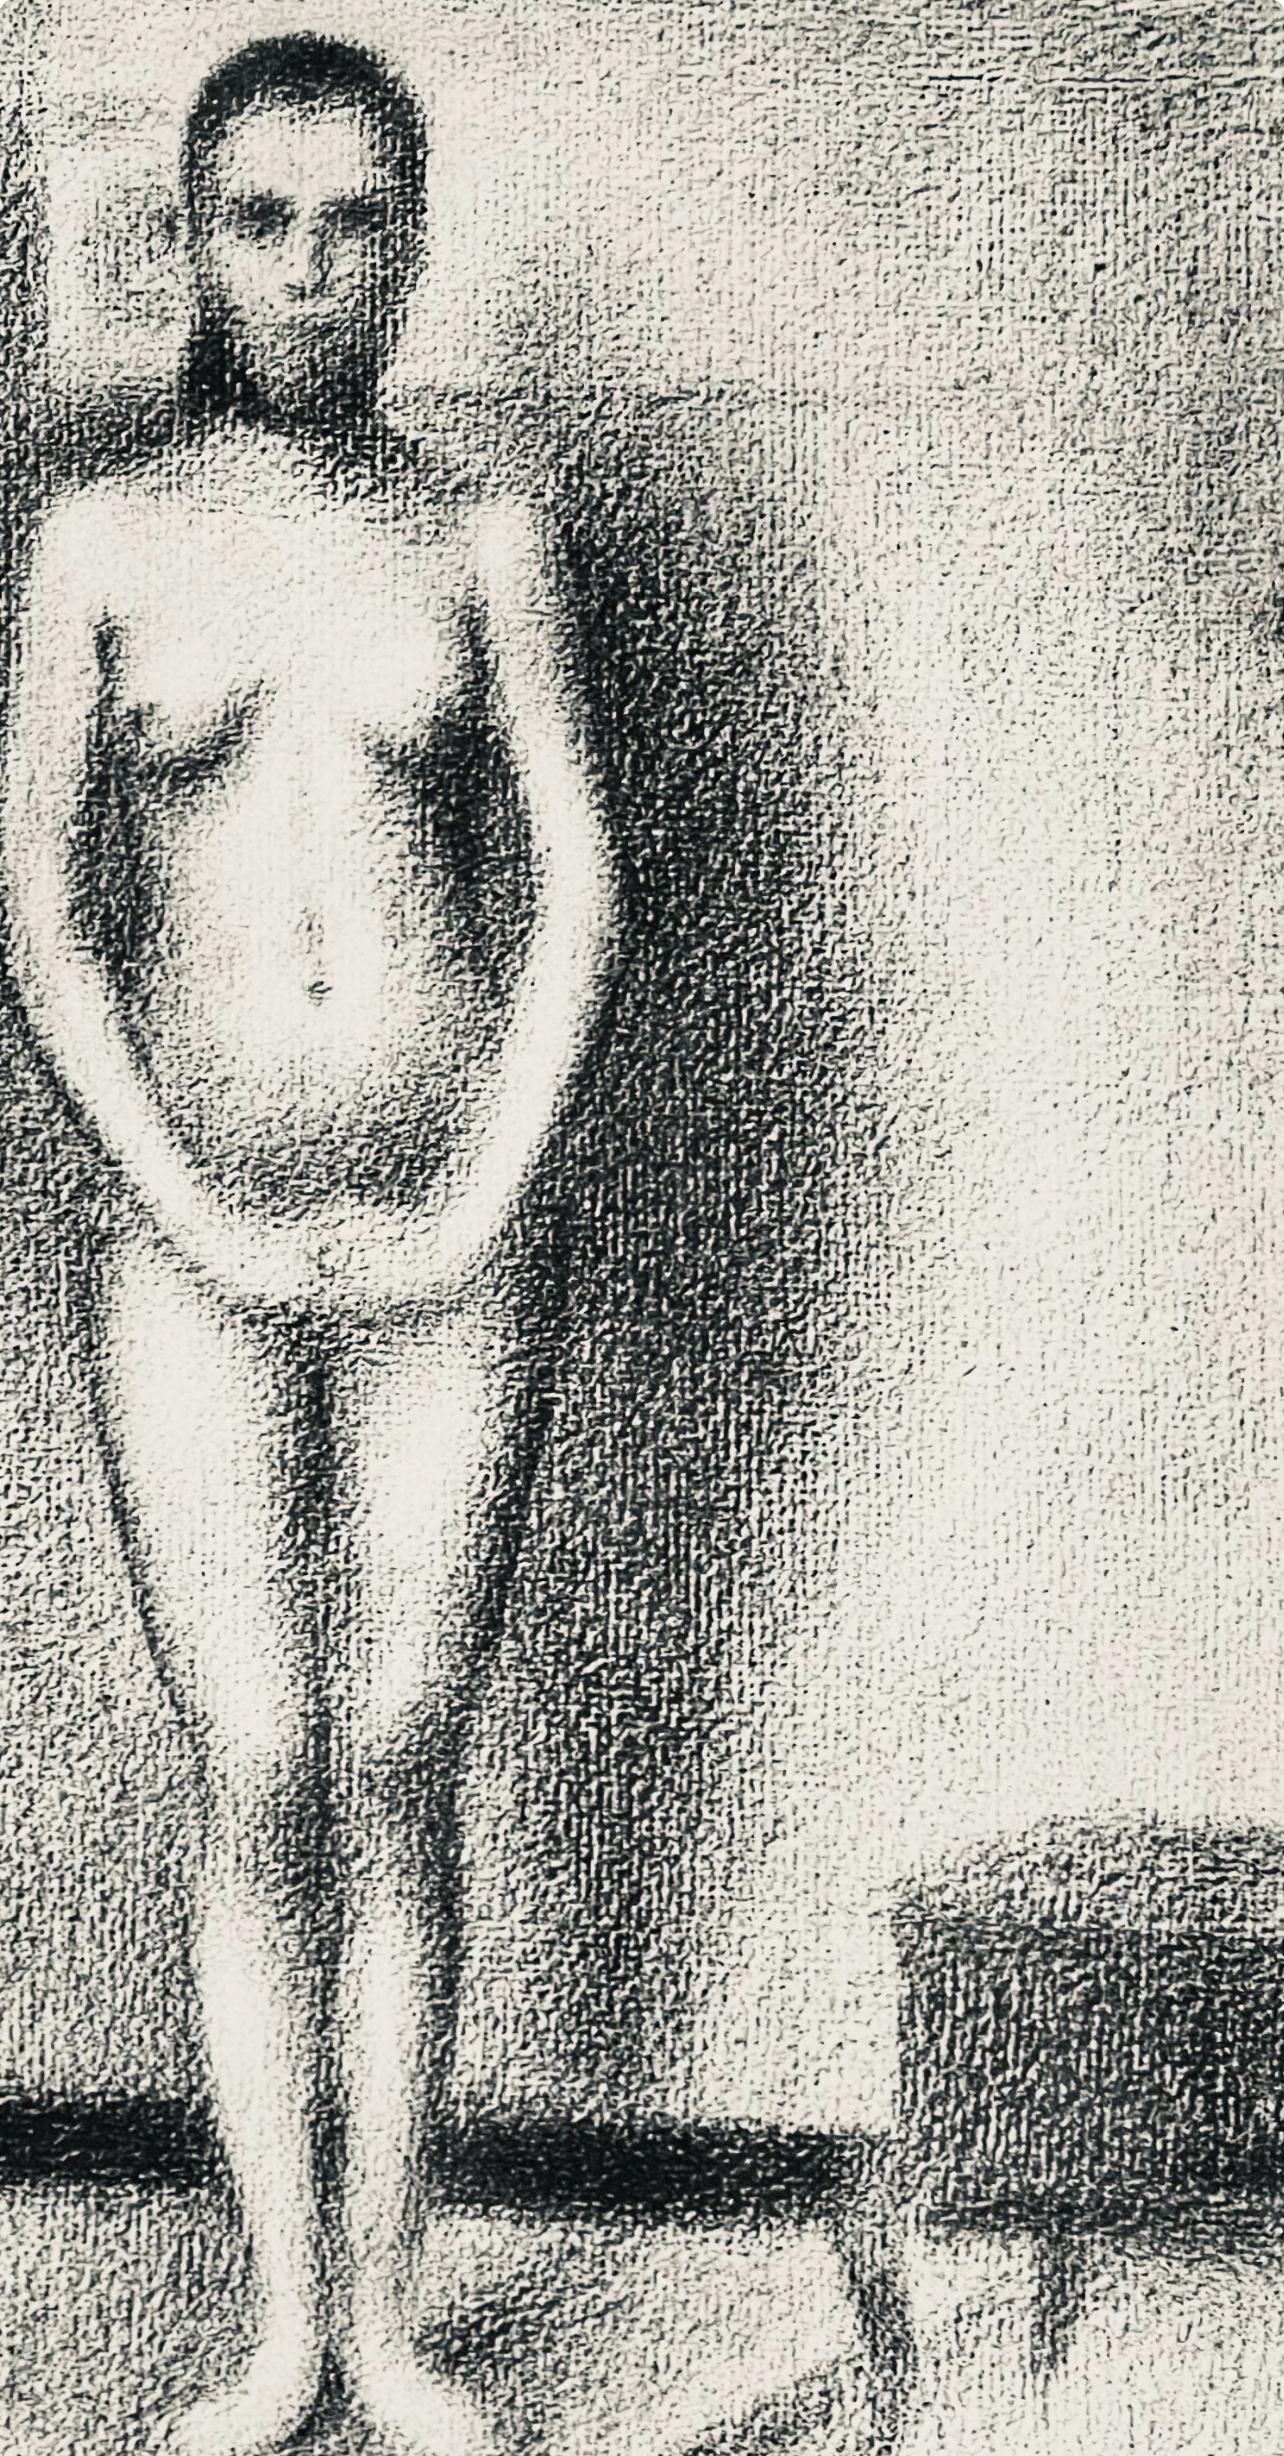 Seurat, La poseuse debout, Seurat (nach) (Impressionismus), Print, von Georges Seurat